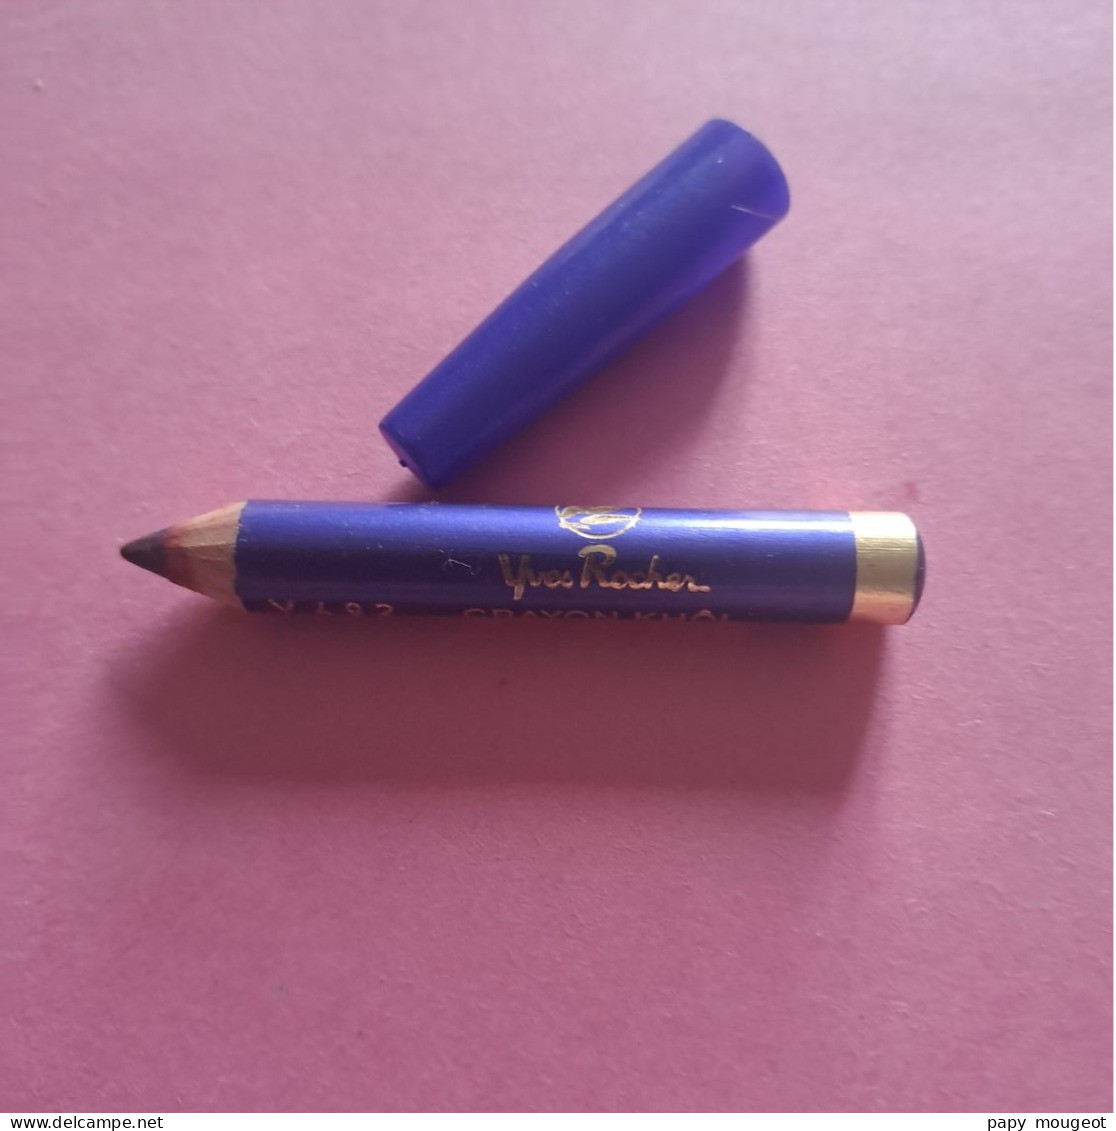 Crayon Khöl Y 482 Violet Des Andes Yves Rocher - Productos De Belleza